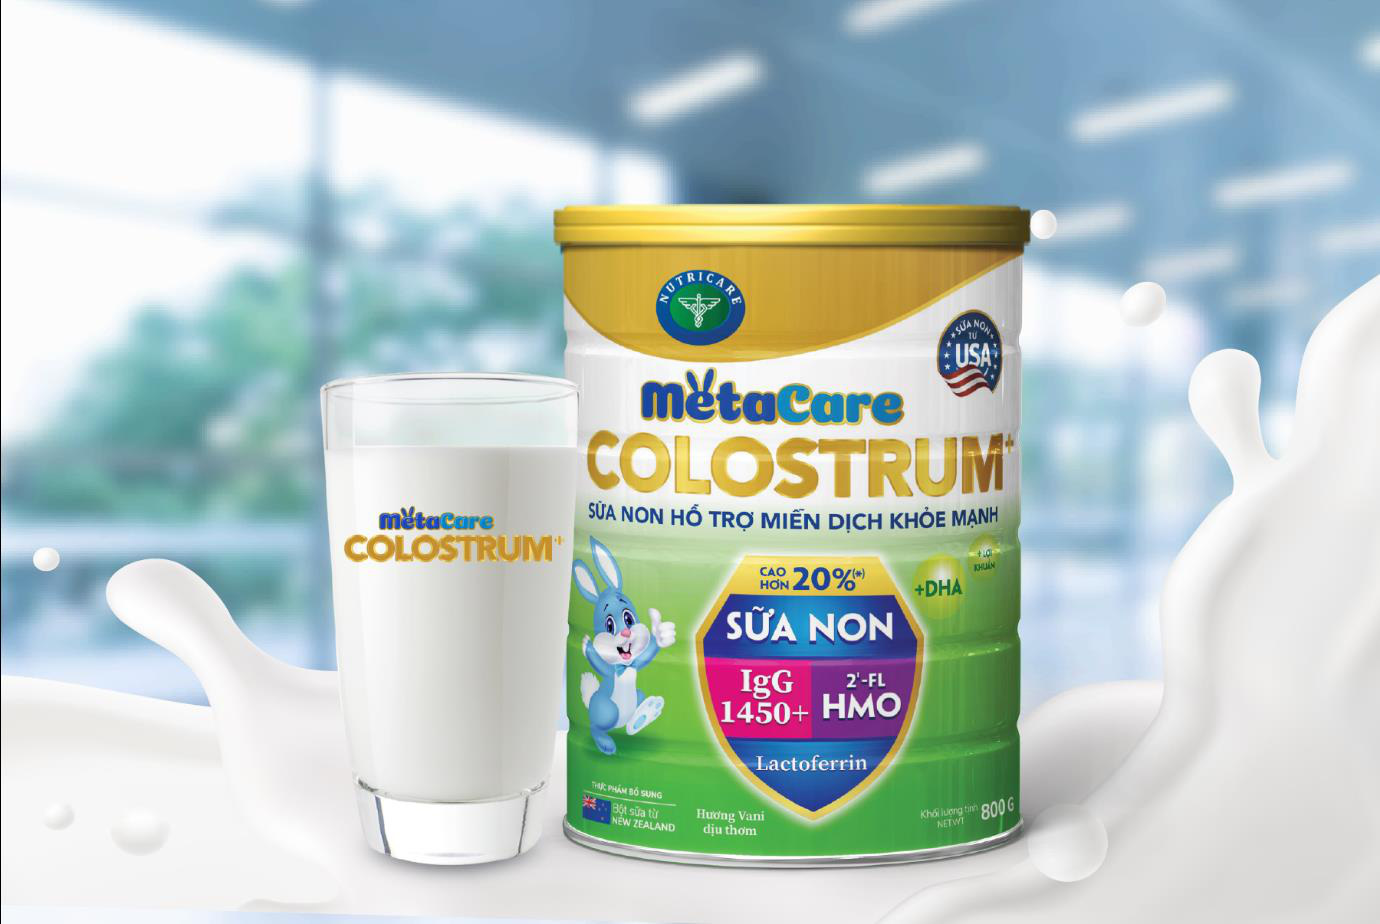 Metacare Colostrum+:  “Chìa khóa vàng” tăng cường miễn dịch của trẻ - Ảnh 3.